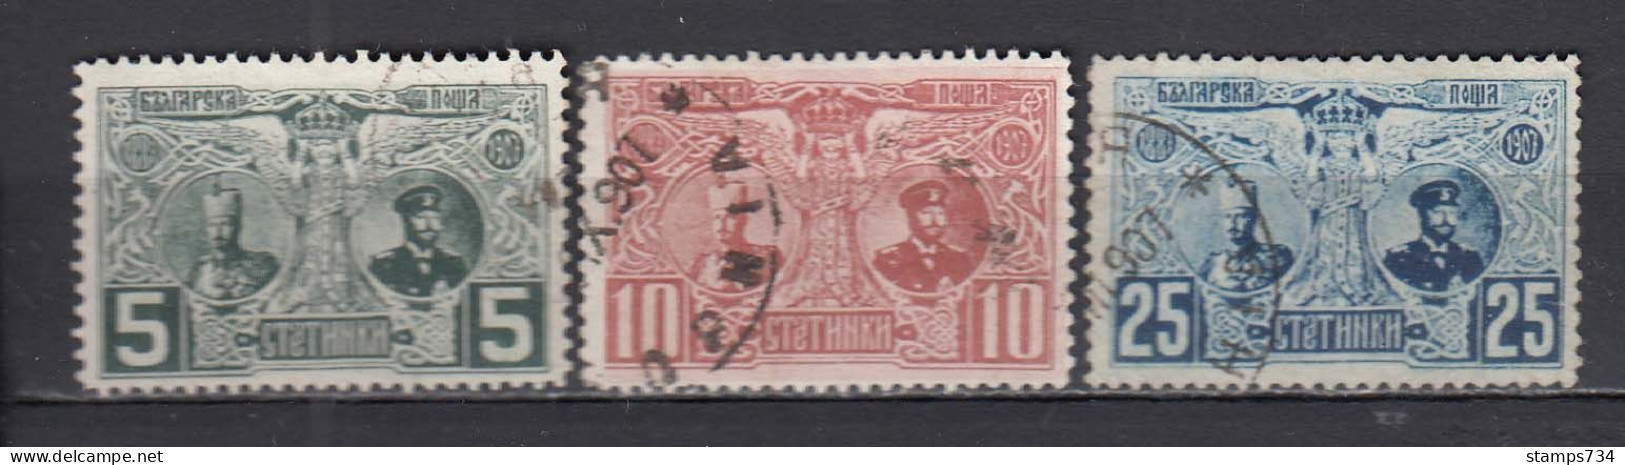 Bulgarie 1907 - 20 Ann. De Regne De Ferdinand I, YT 69-71, Obliteres - Gebraucht